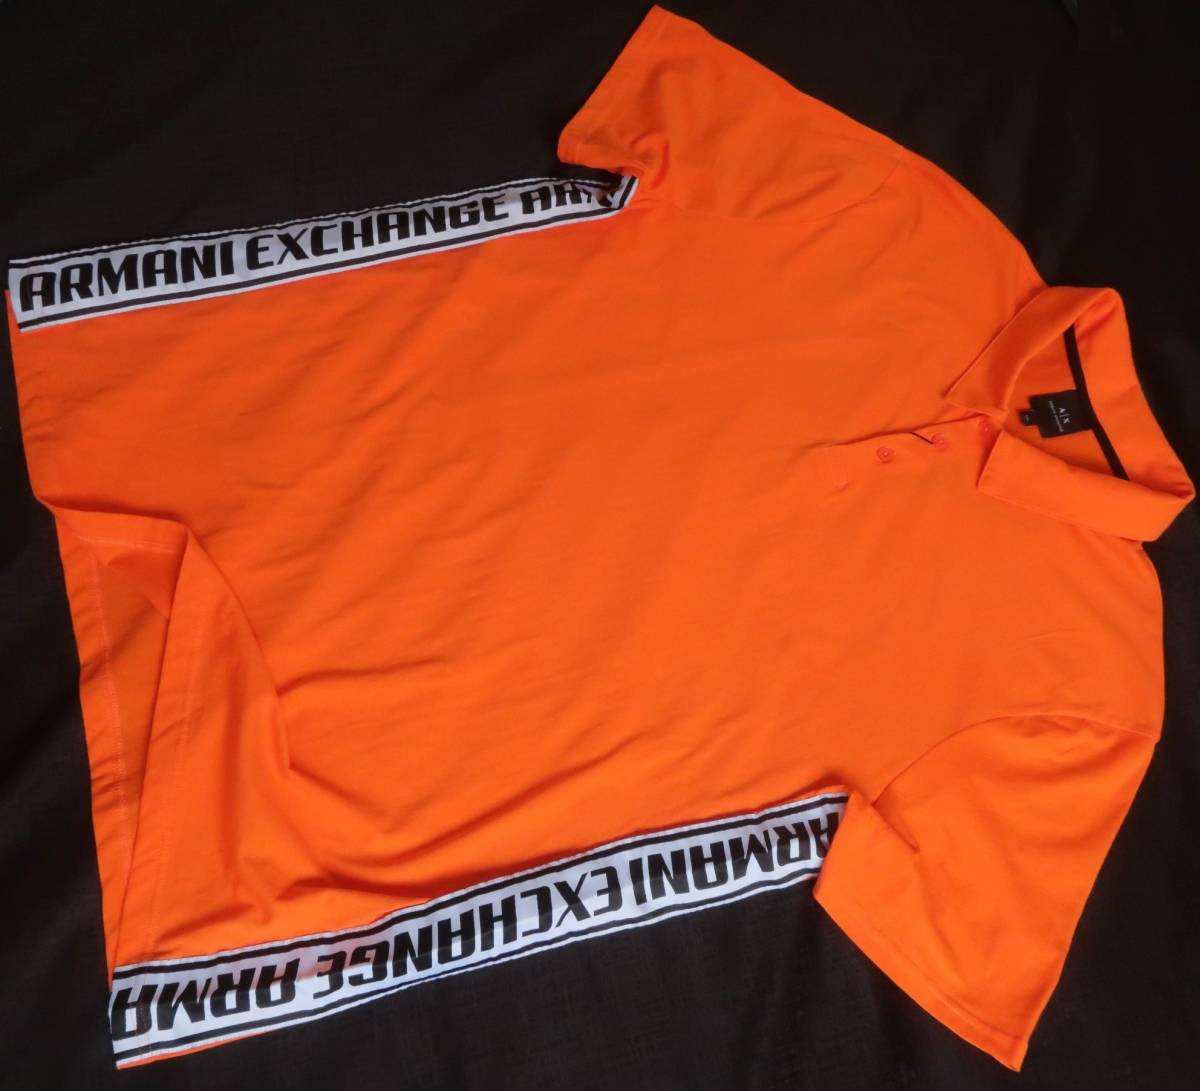  новый товар * Armani * orange рубашка-поло * рейсинг Logo лента * короткий рукав вязаный рубашка XL*A/X ARMANI*795